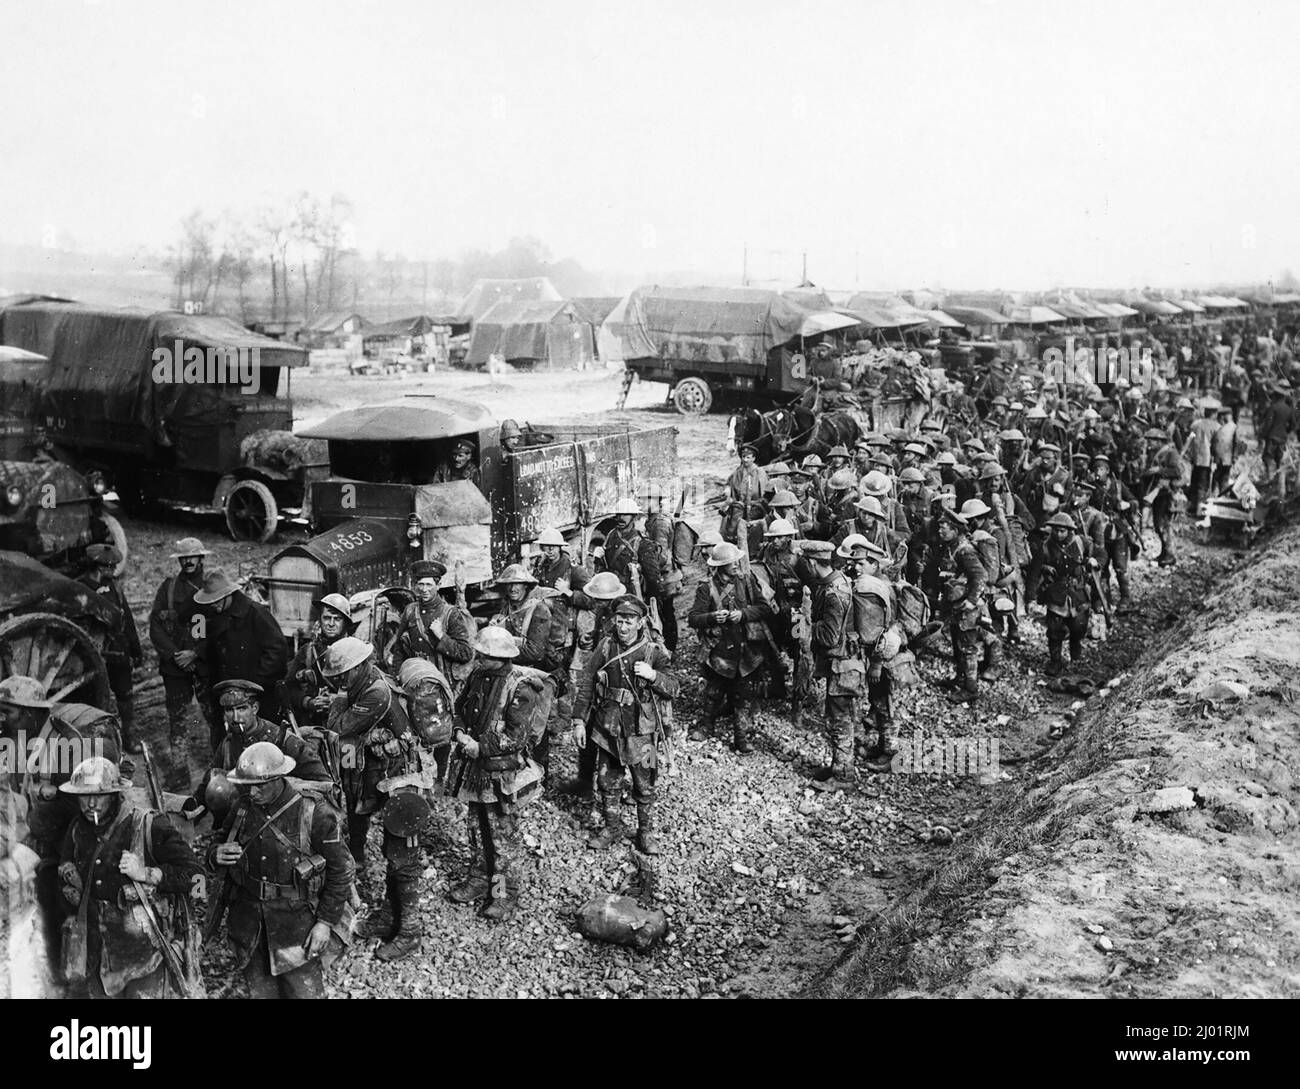 Männer des Bataillons 4., Worcestershire Regiment, sammeln sich in der Nähe von Armeedienstkorps (ASC) Lastwagen, nachdem sie aus den Schützengräben bei Albert im September 1916 zurückgekehrt sind. Stockfoto